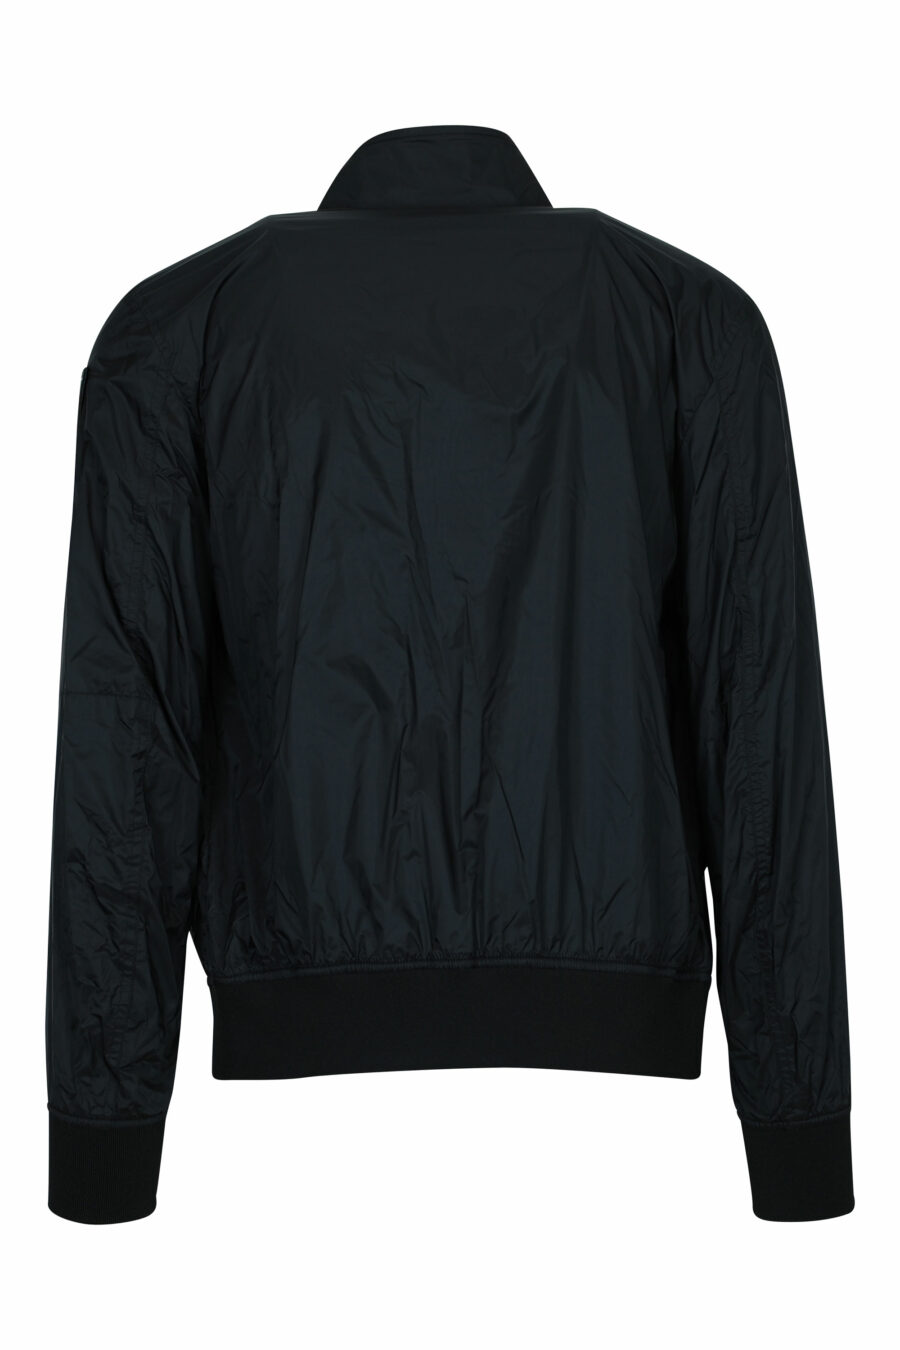 Schwarze Jacke mit seitlichem Reißverschluss und Logo - 8058610786533 1